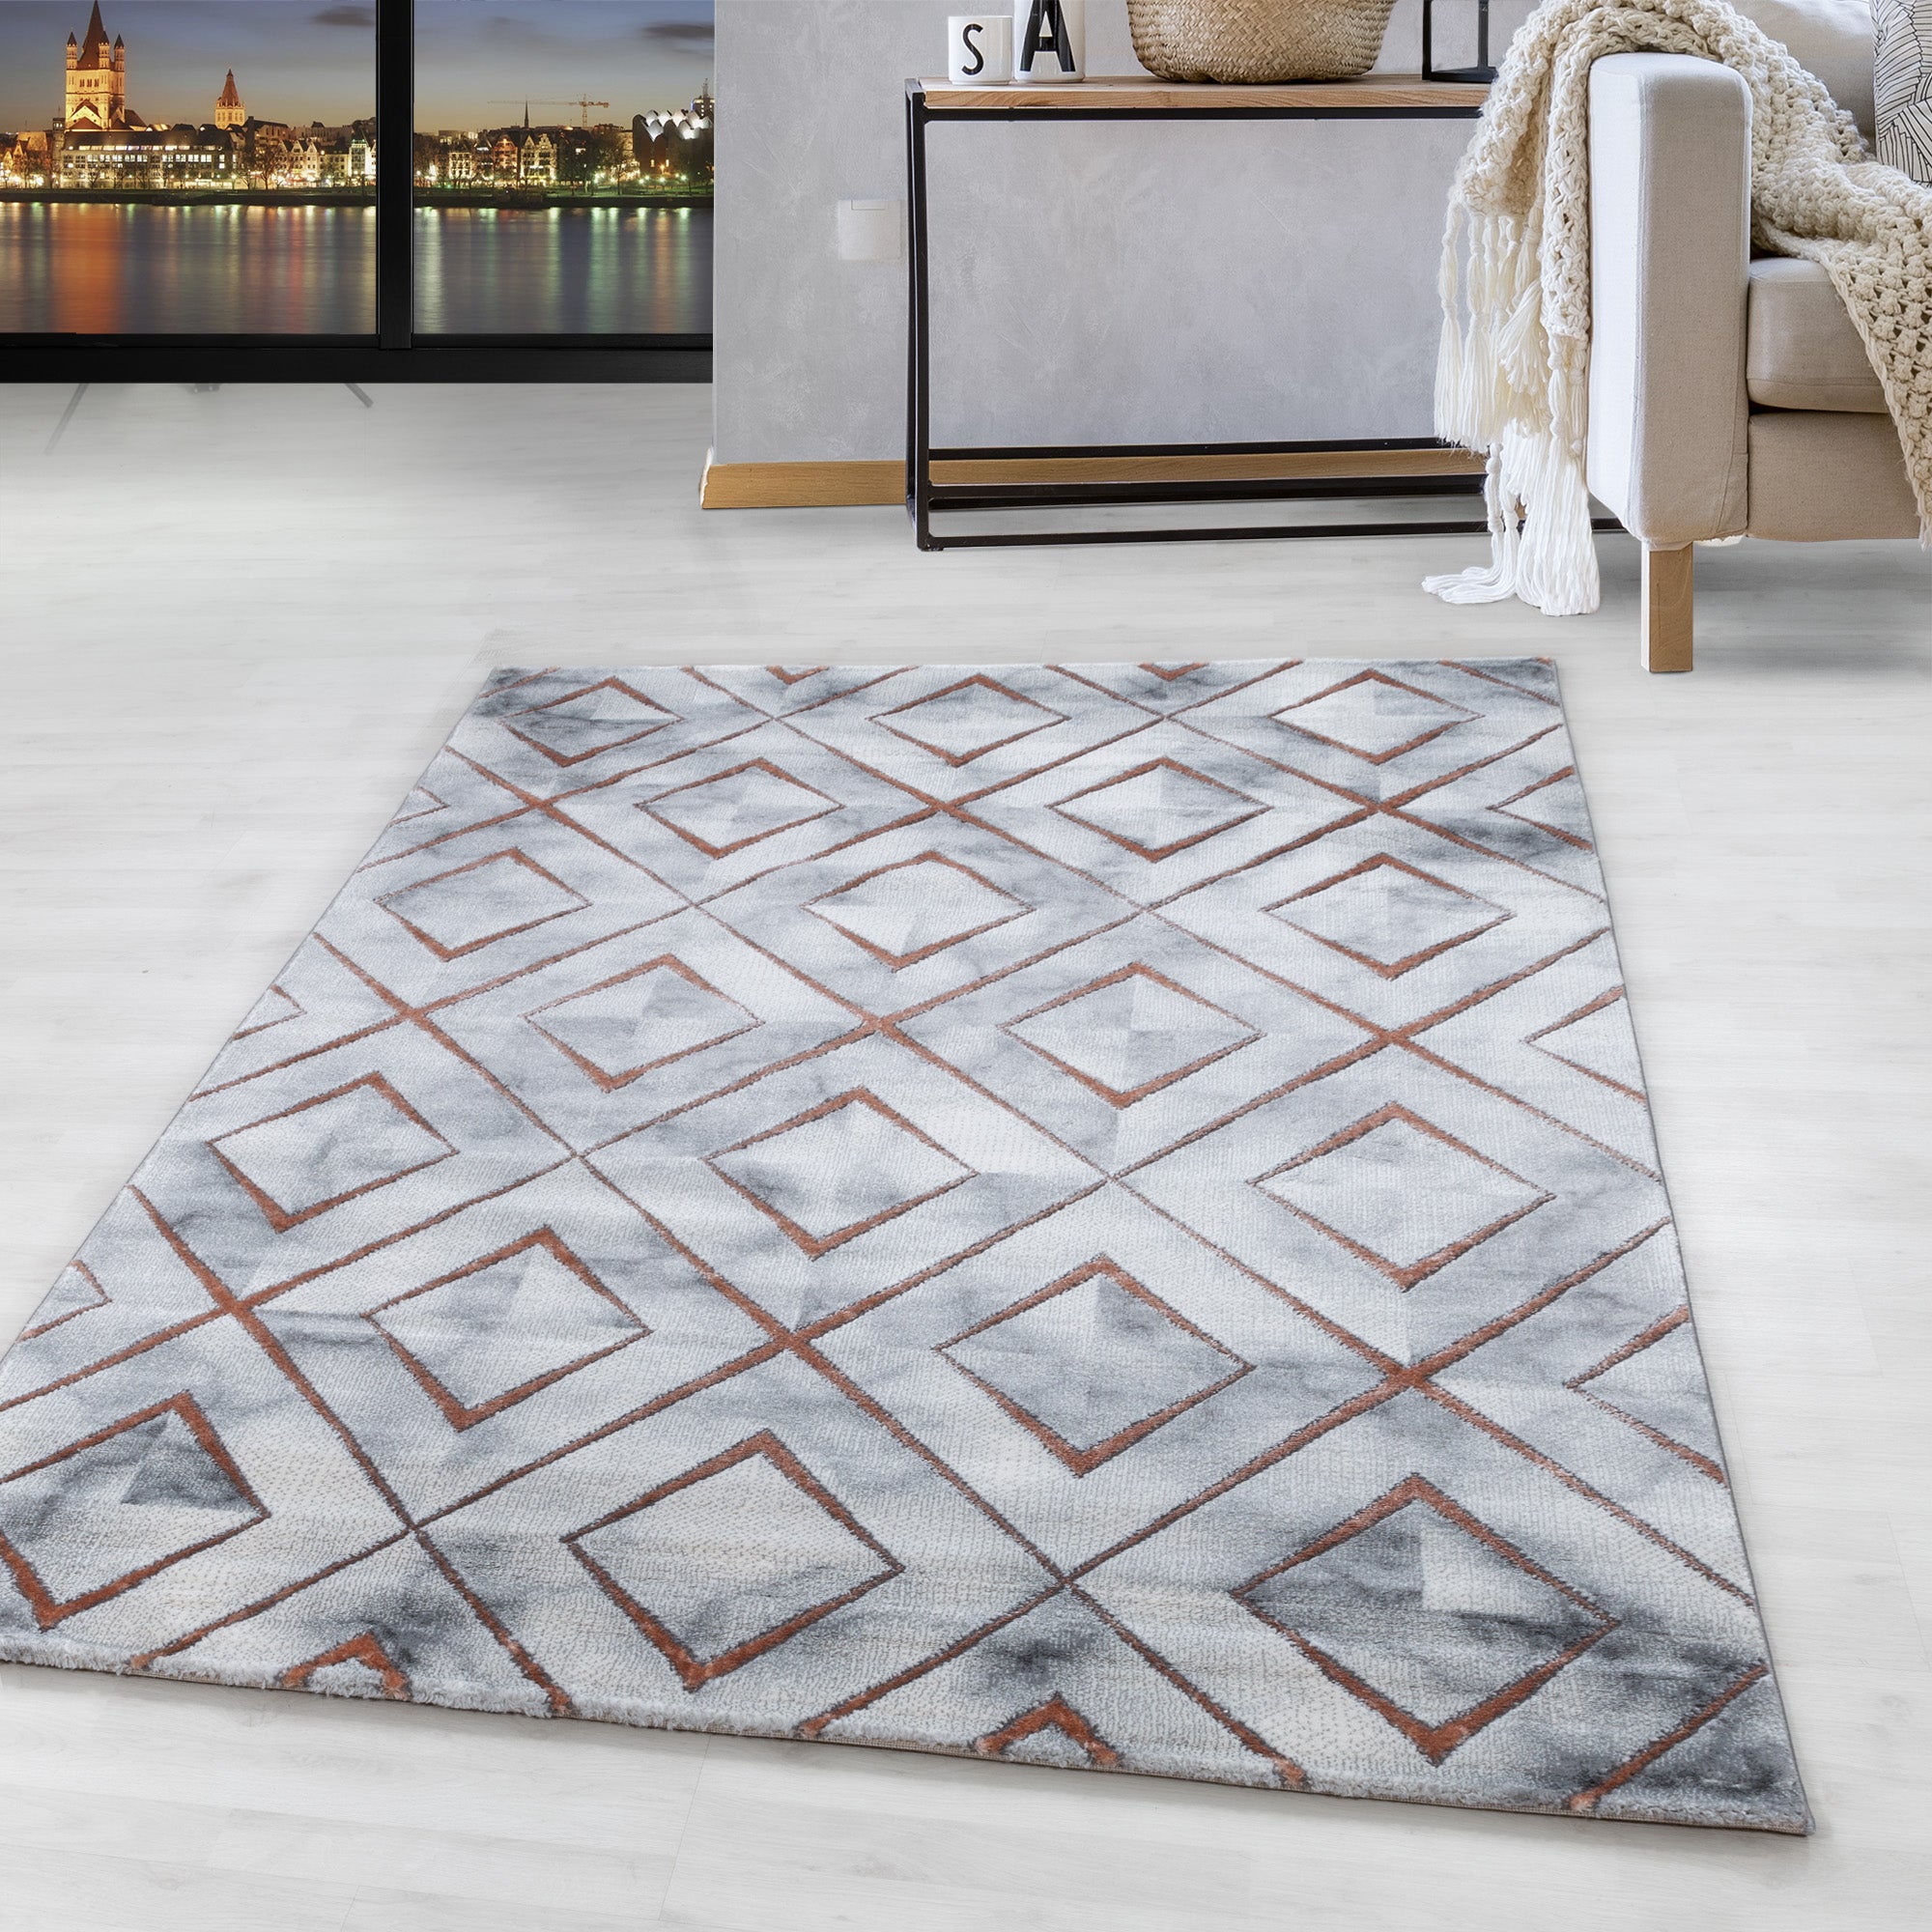 Kurzflor Design Teppich Wohnzimmerteppich Muster Marmoriert Raute Karo Bronze